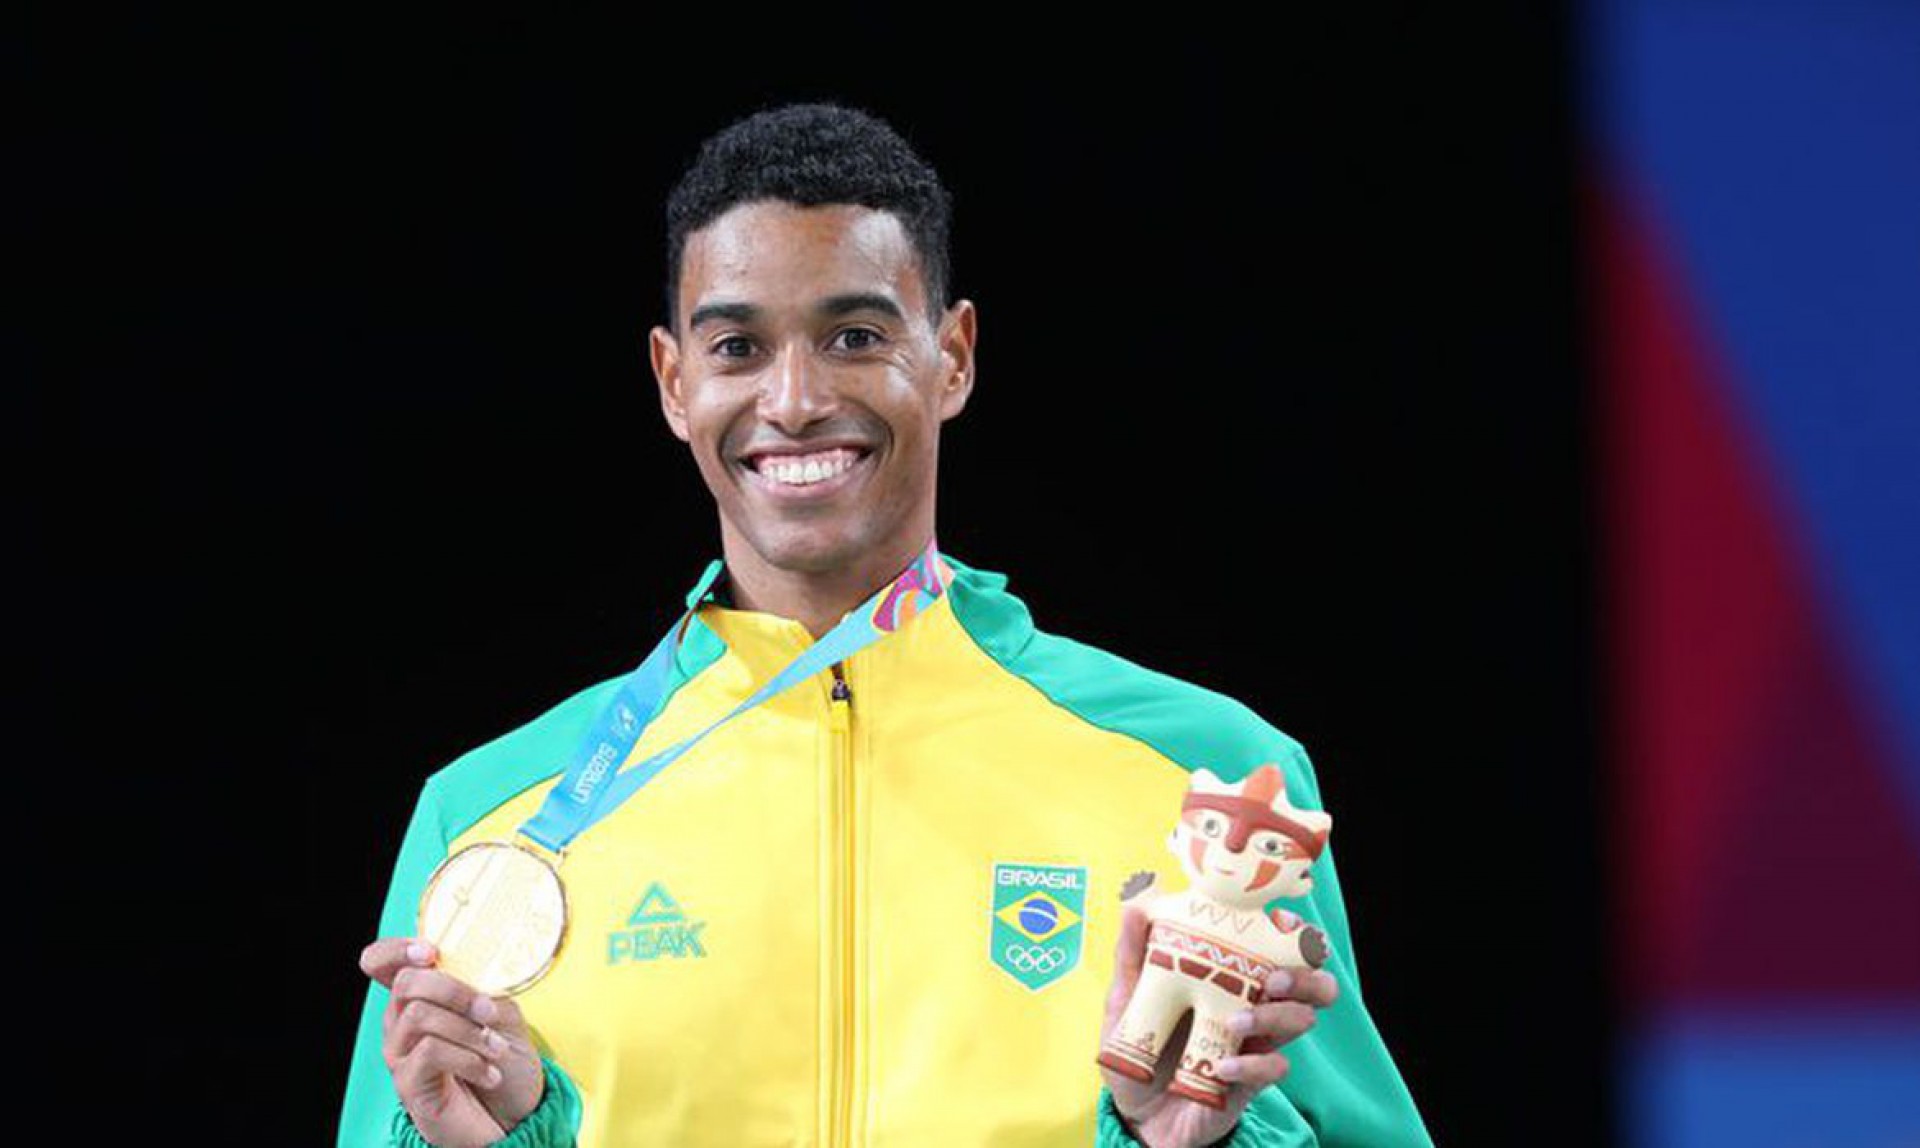 Campeão pan-americano em 2019, Ygor Coelho pode conquistar a primeira vitória brasileira no badminton em Jogos Olímpicos (Foto: Abelardo Mendes Jr/ rededoesporte.gov.br)